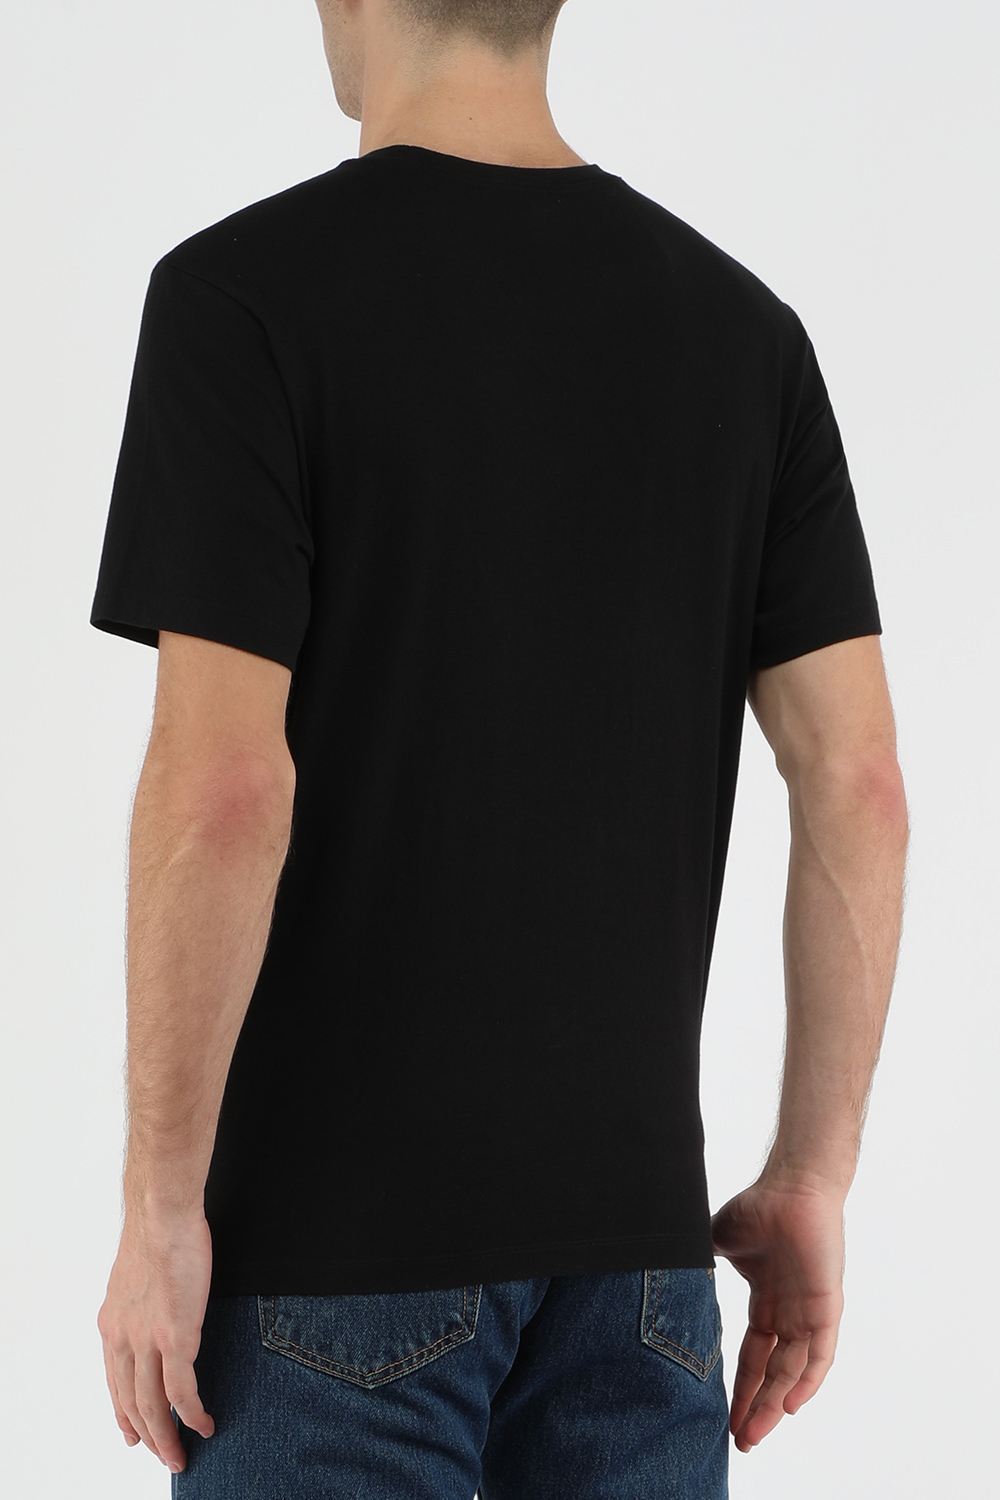 חולצת טי עם סמל הנמר בצבע שחור KENZO